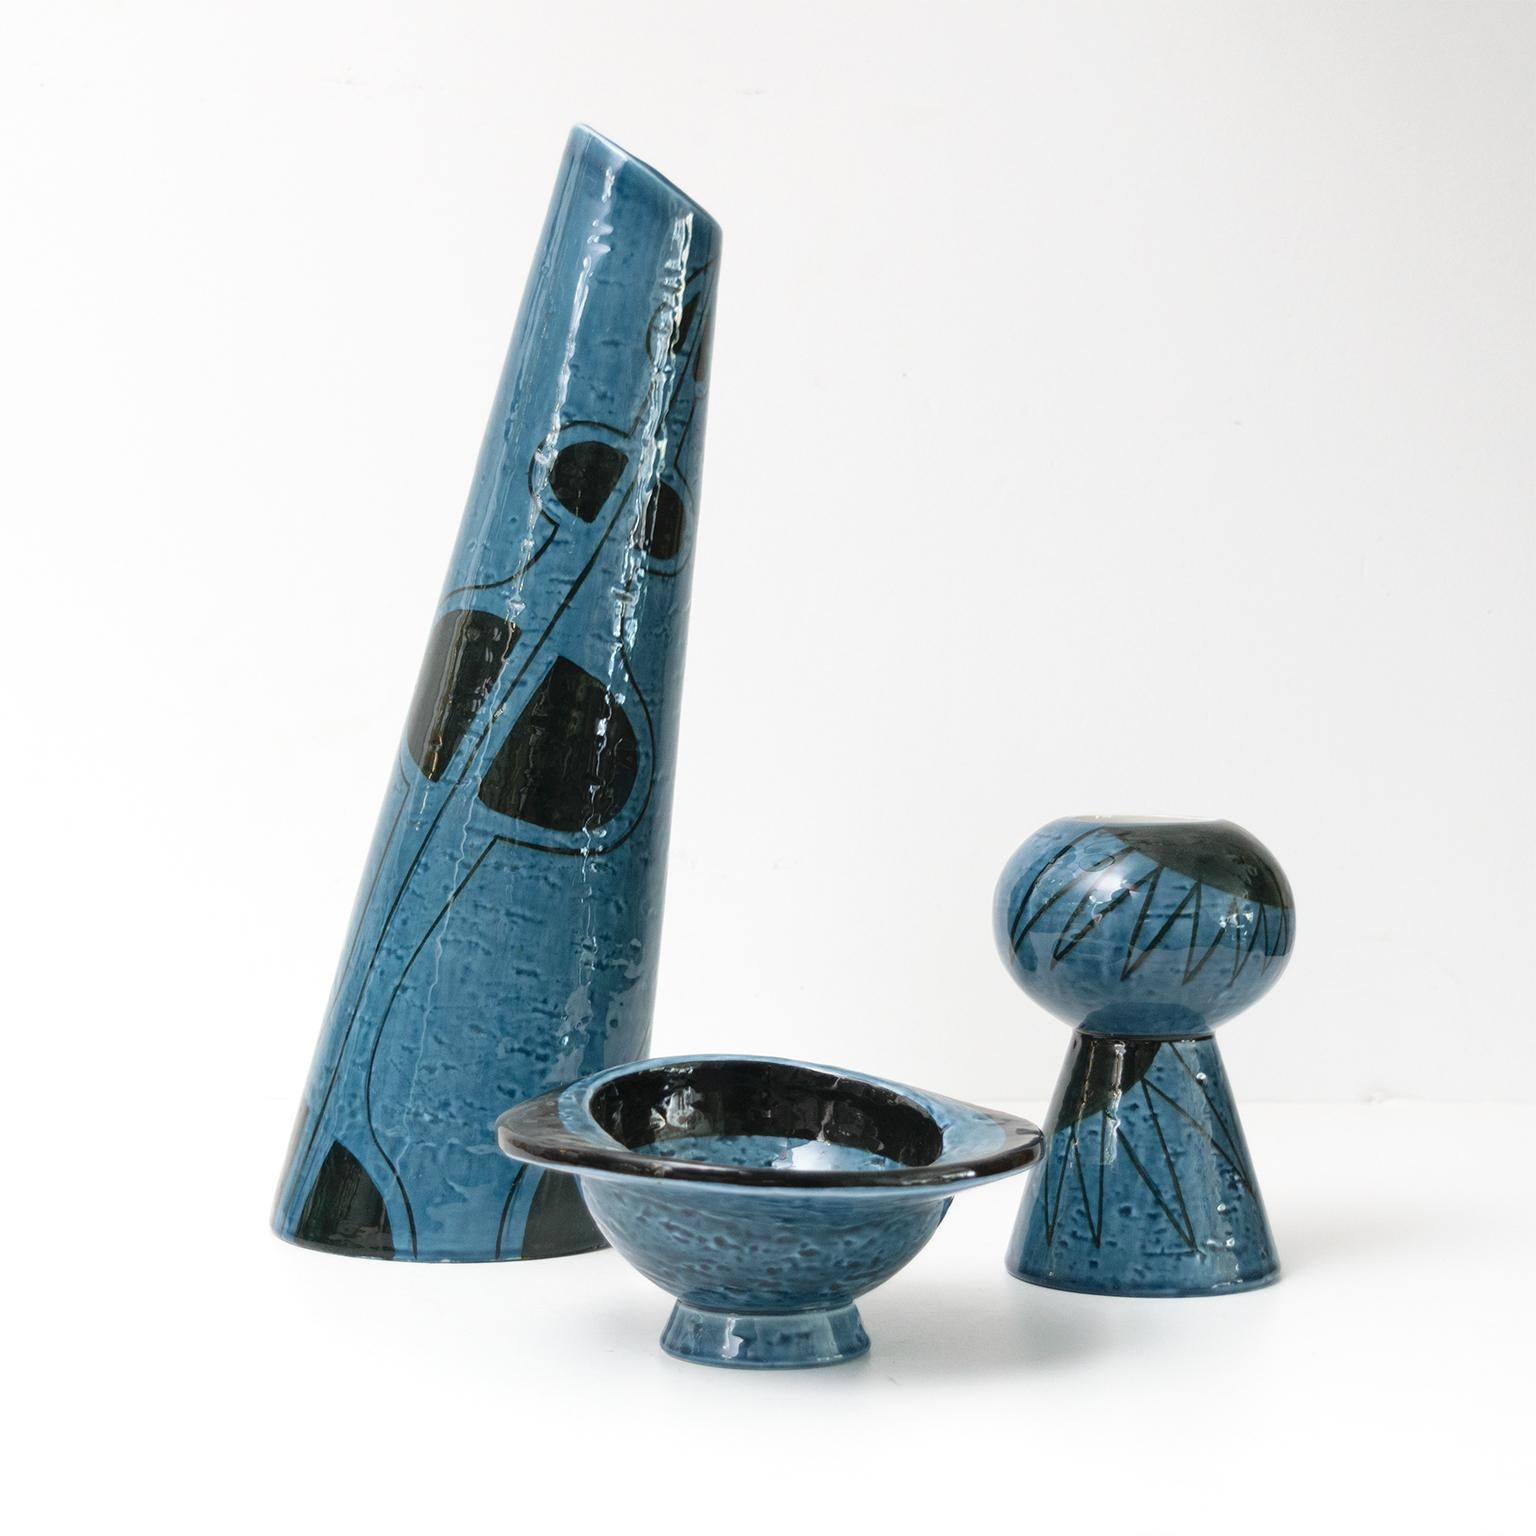 Vilhelm Berke Petersen groupe de 3 pièces en céramique Rorstrand en noir et bleu avec des motifs abstraits. Fabriqué à Rorstrand, Suède, dans les années 1950.

Petersen a étudié auprès des artistes Paul Klee et Wassily Kandinsky au Bauhaus de